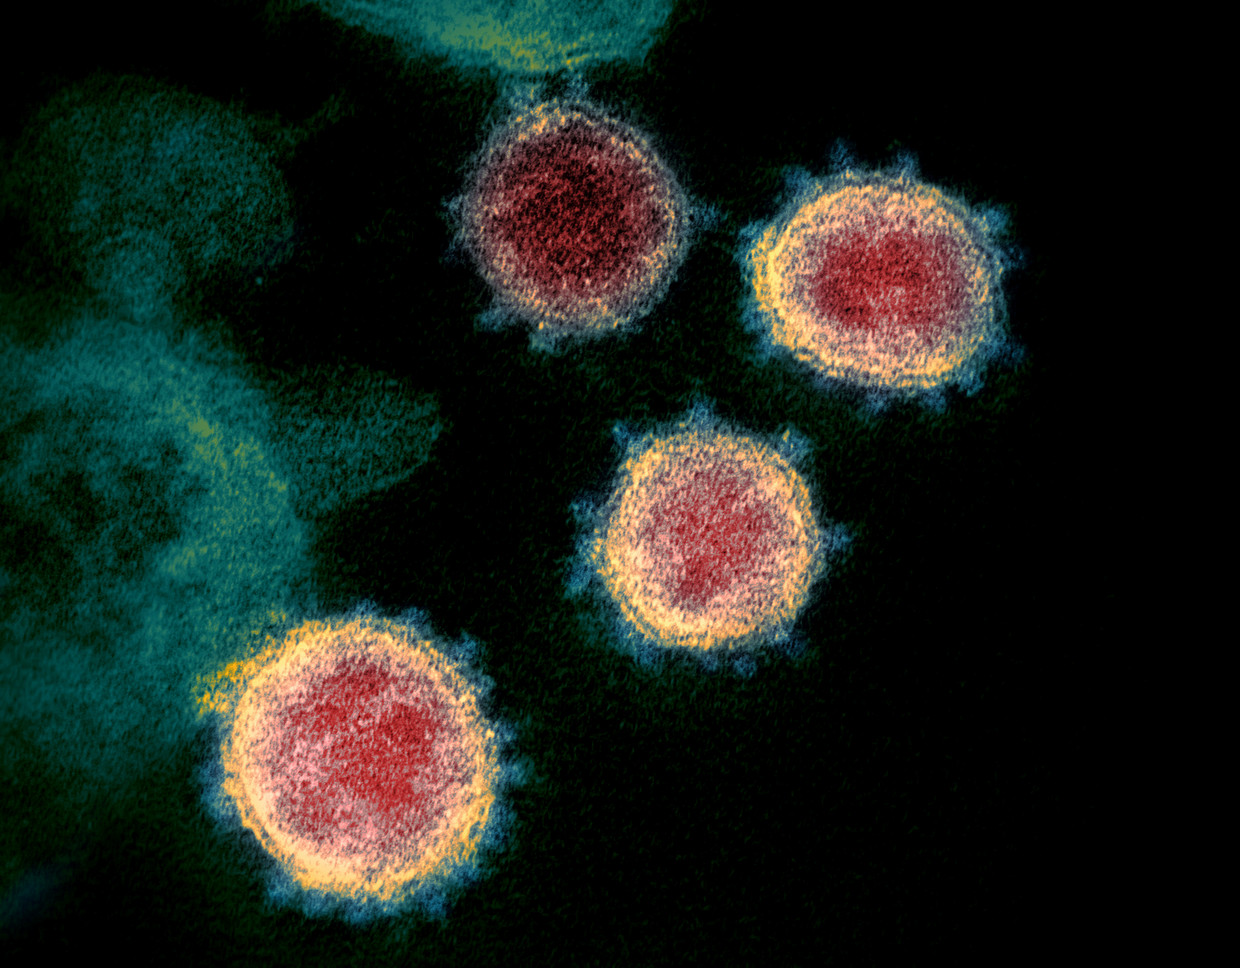 Archiefbeeld van het coronavirus onder de microscoop. Beeld via REUTERS